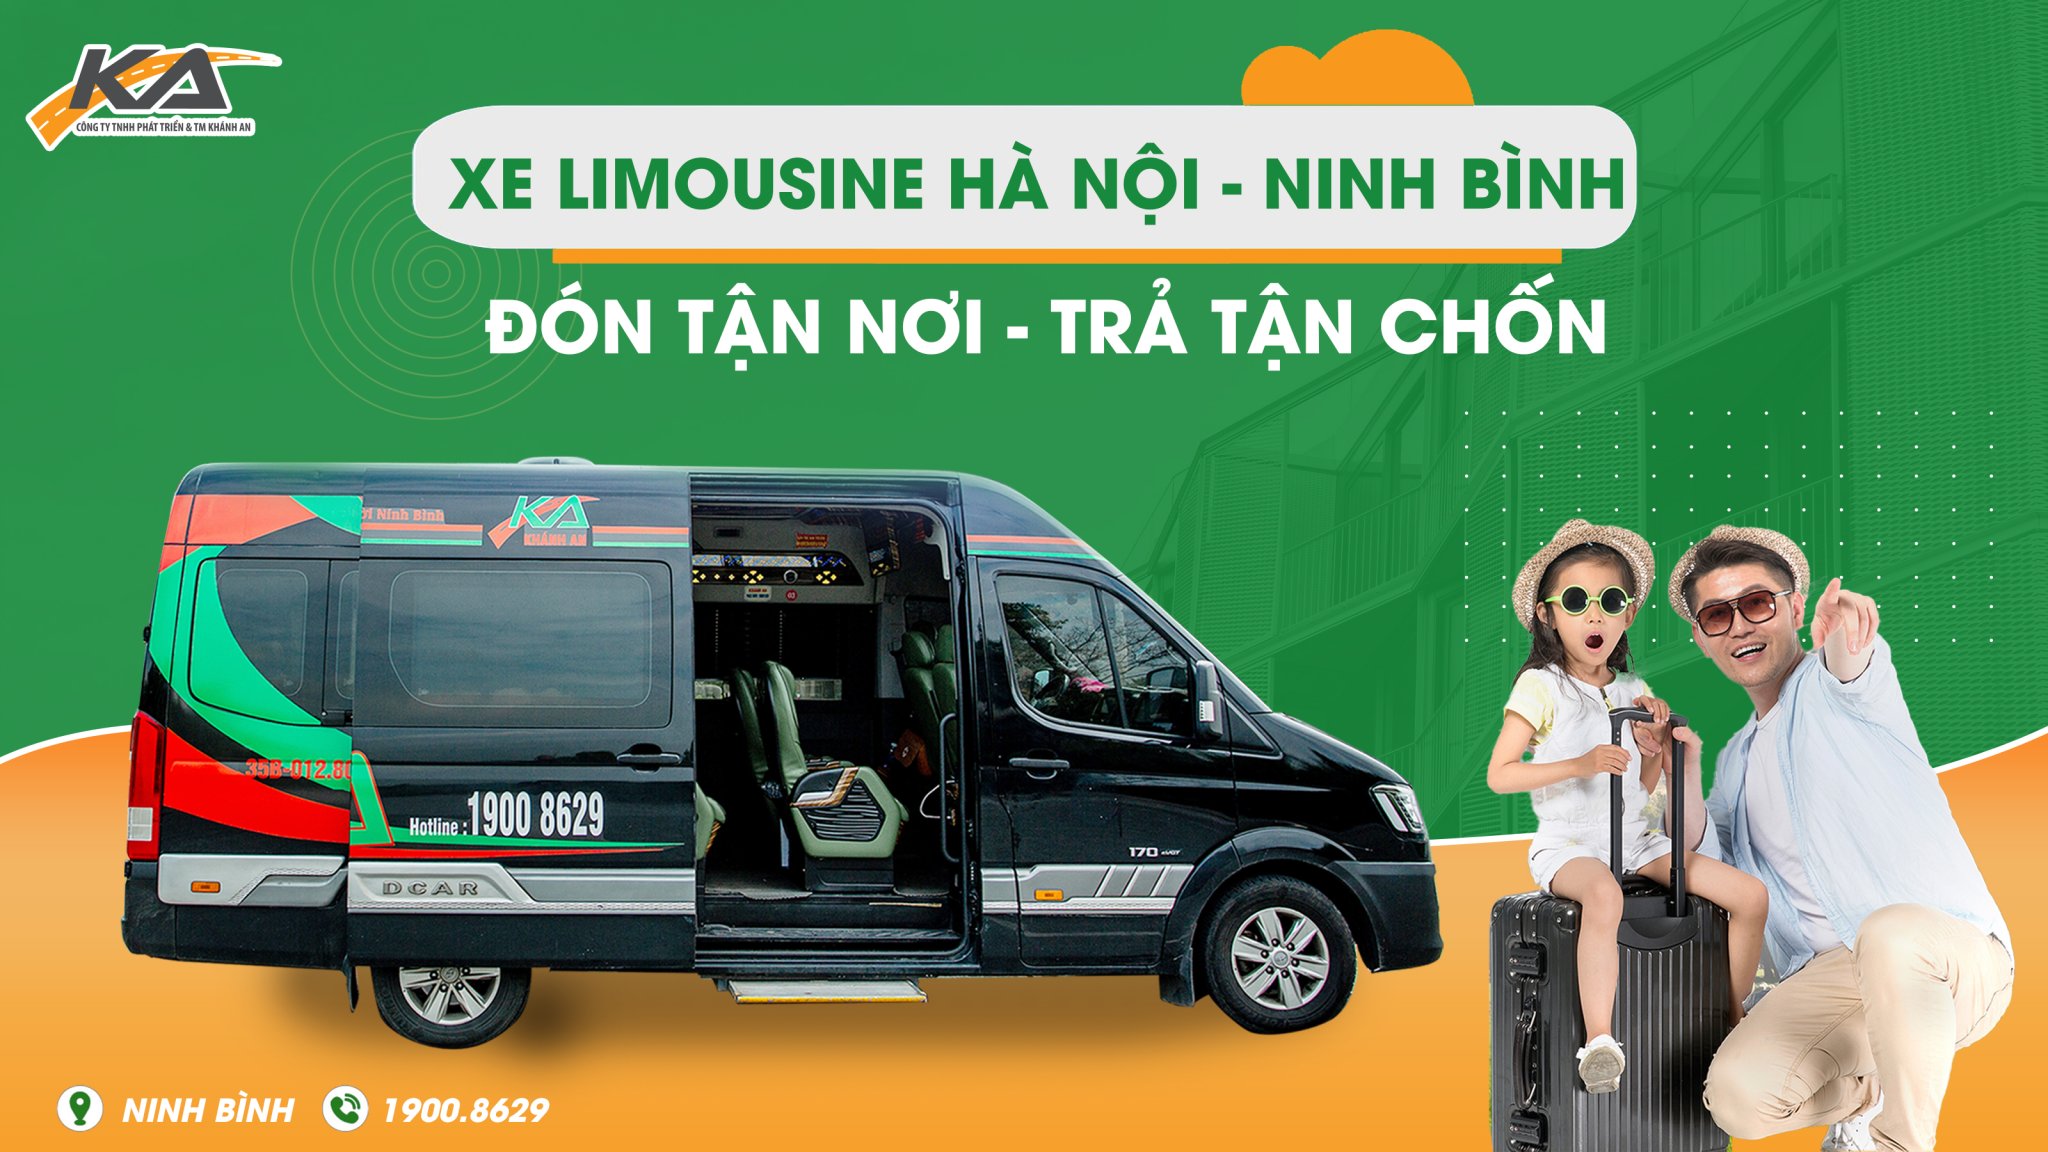 Xe Limousine Hà Nội – Ninh Bình đón trả tận nơi